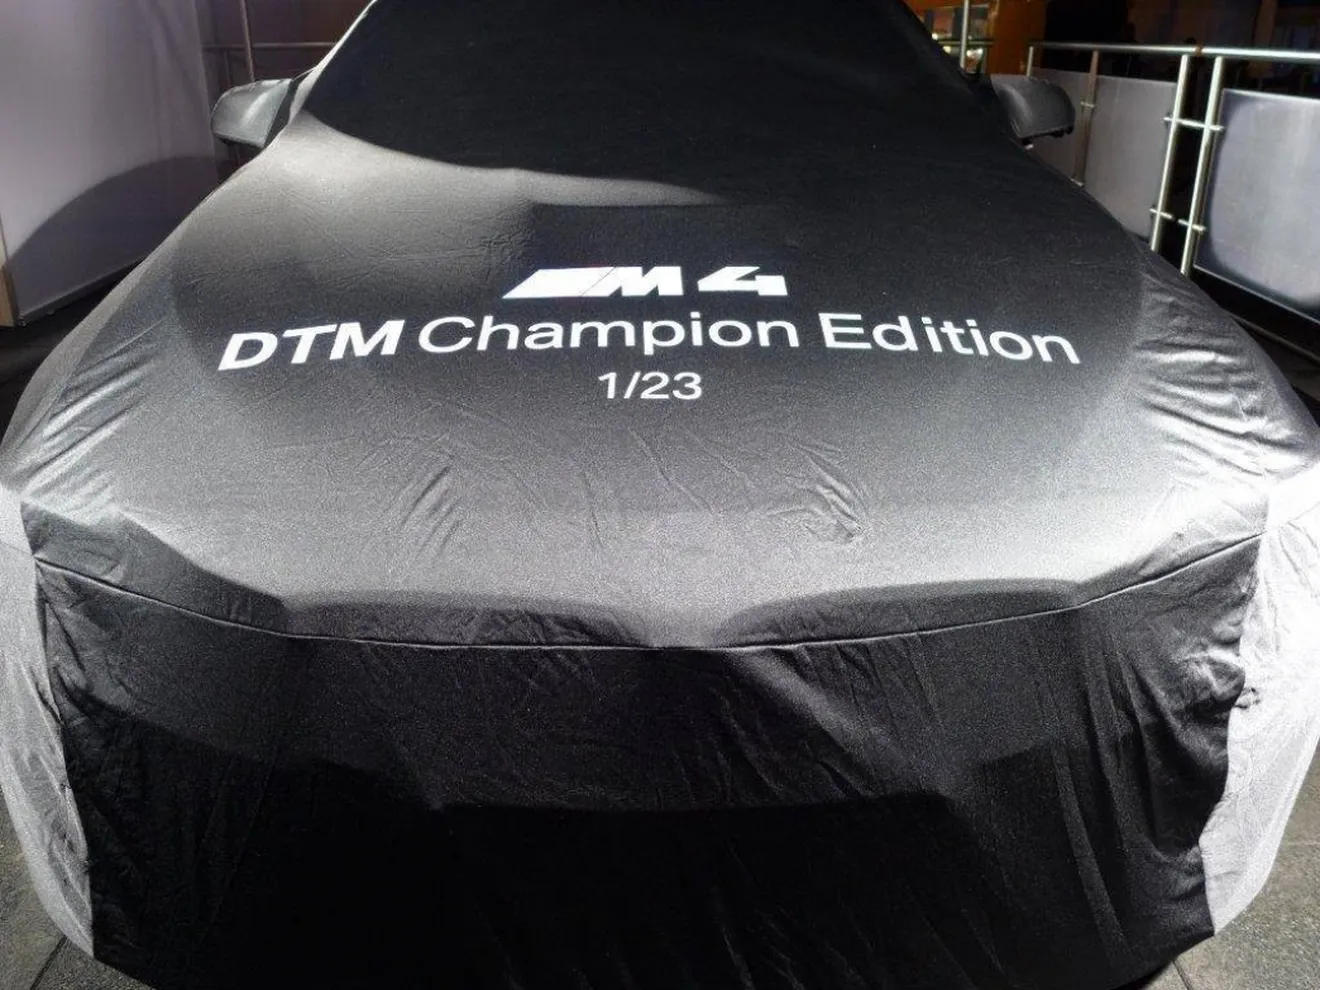 El BMW M4 DTM Champion Edition está listo para su presentación